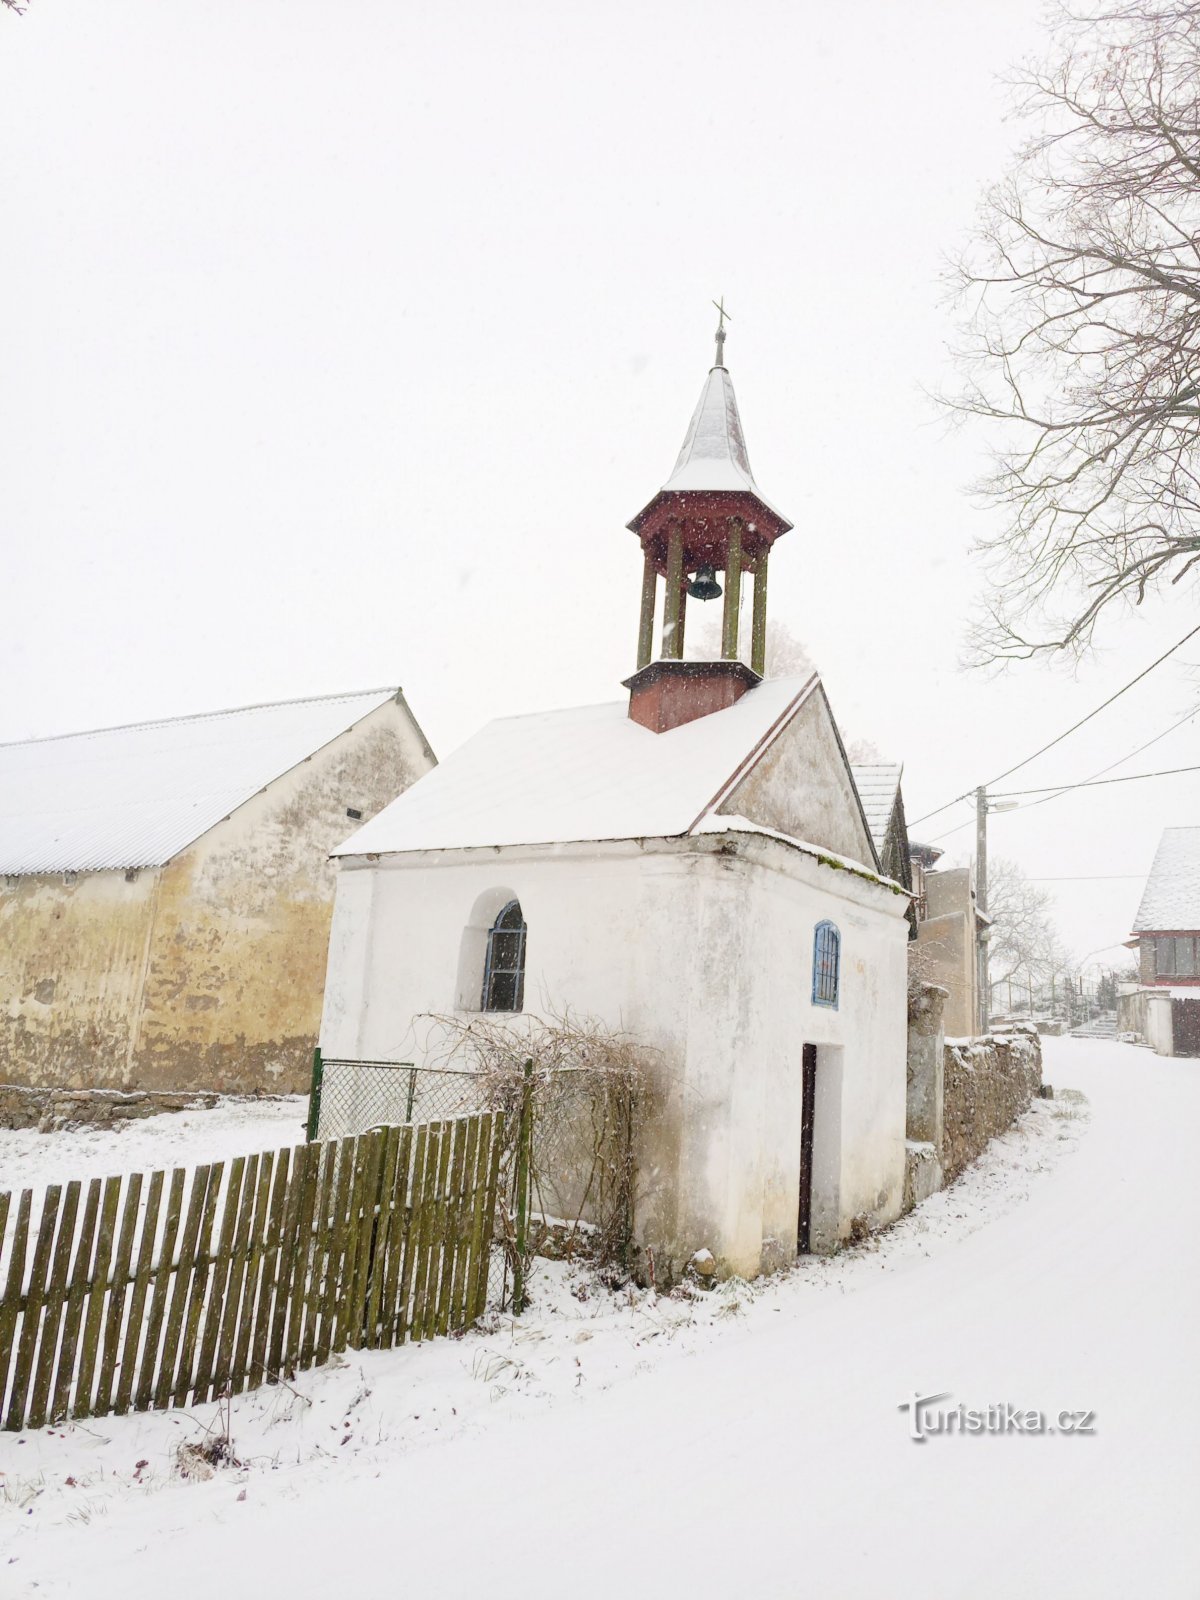 2. Kapel met zeshoekig houten belfort in Cunkov